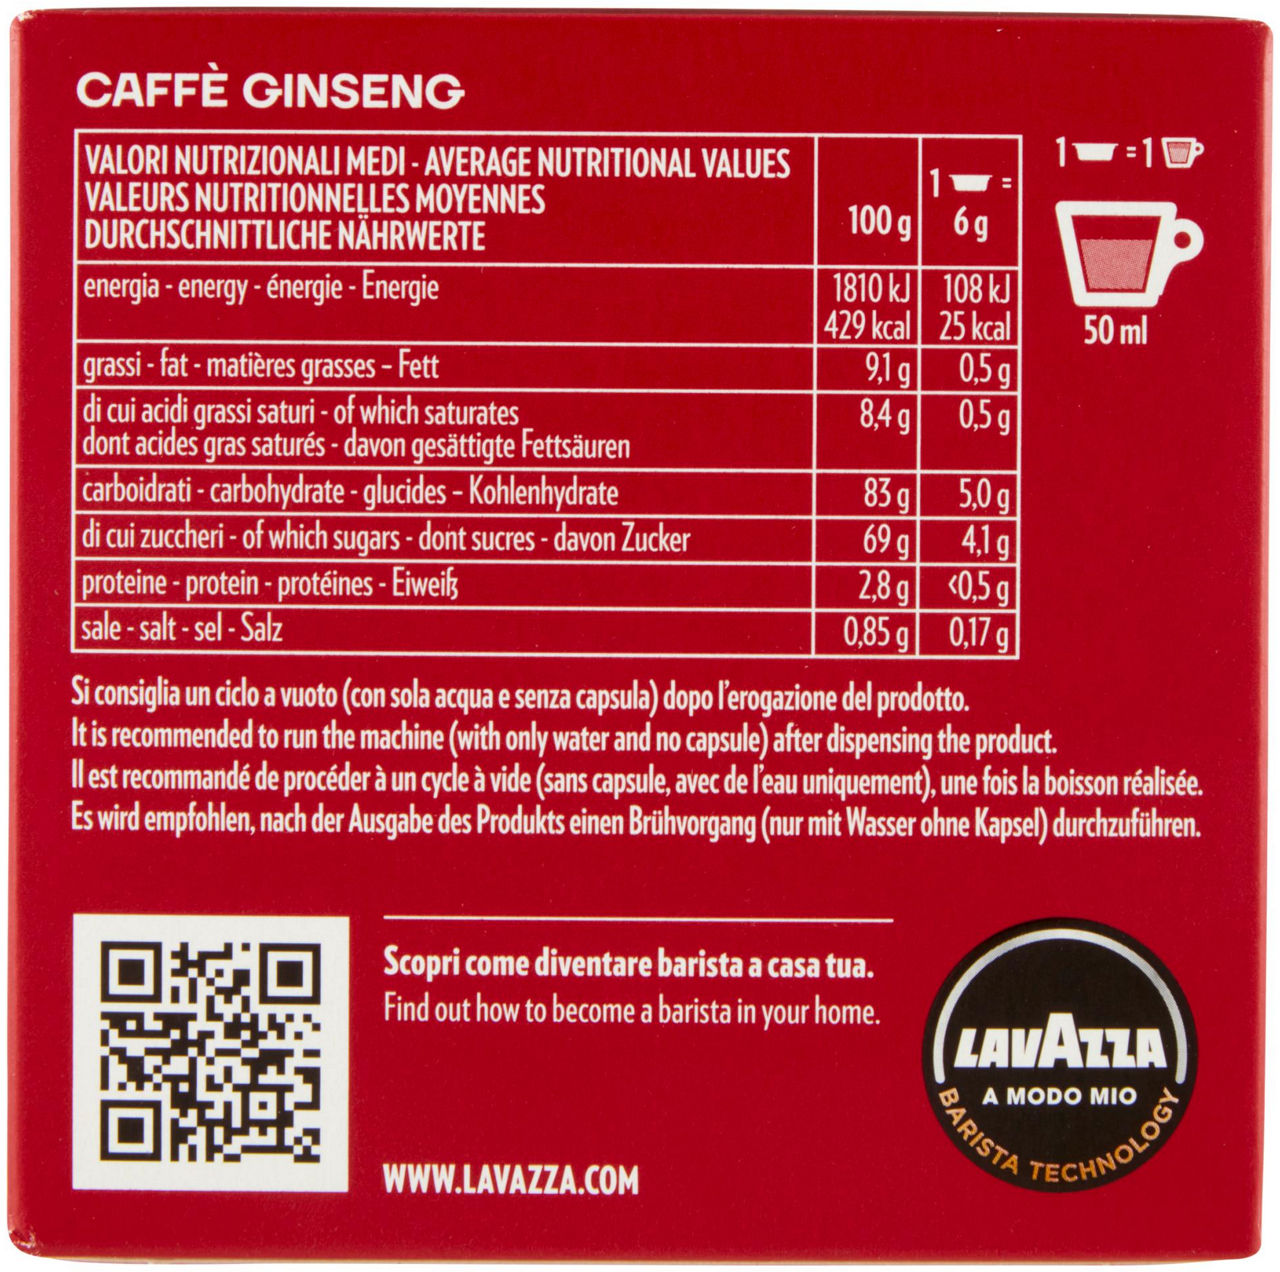 CAFFE' GINSENG A MODO MIO LAVAZZA SCATOLA 12 CAPSXGR.6 - 2